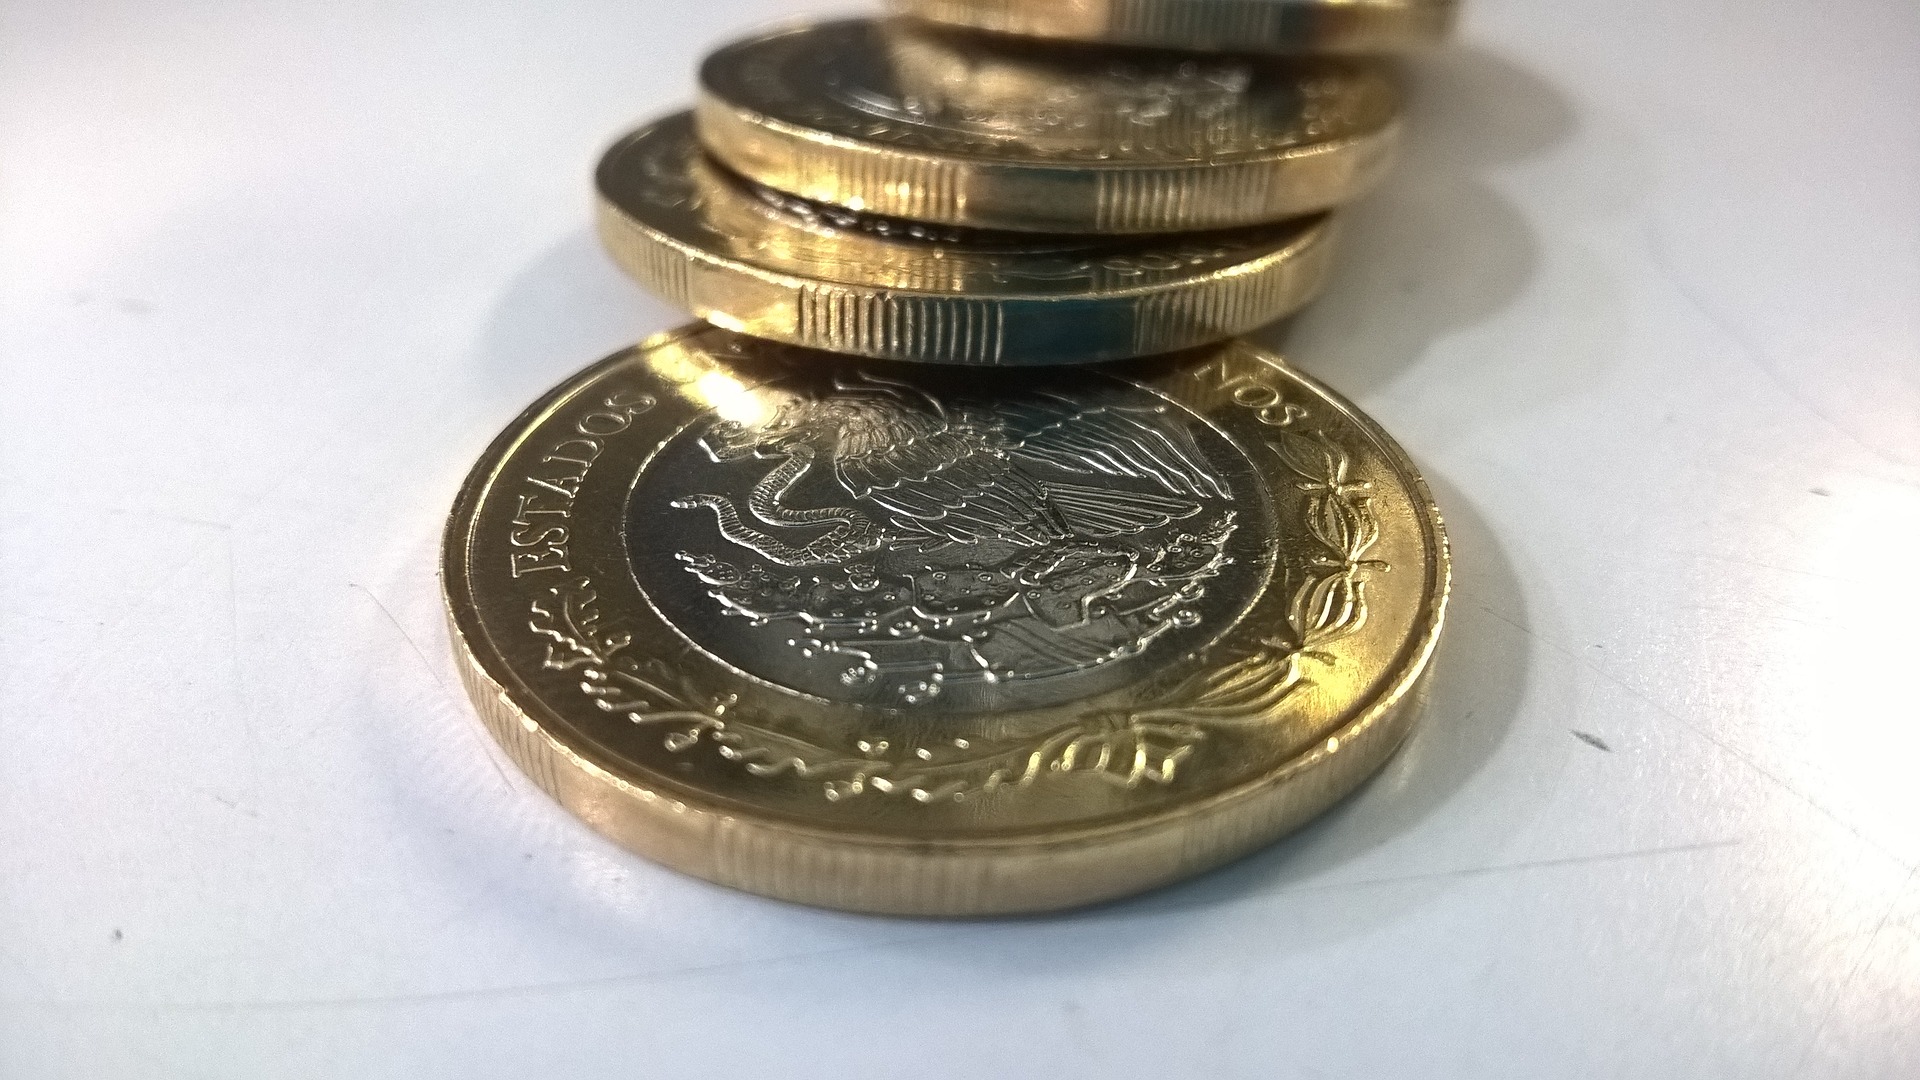 El reto es juntar monedas de 10 pesos. (Foto: Pixabay)